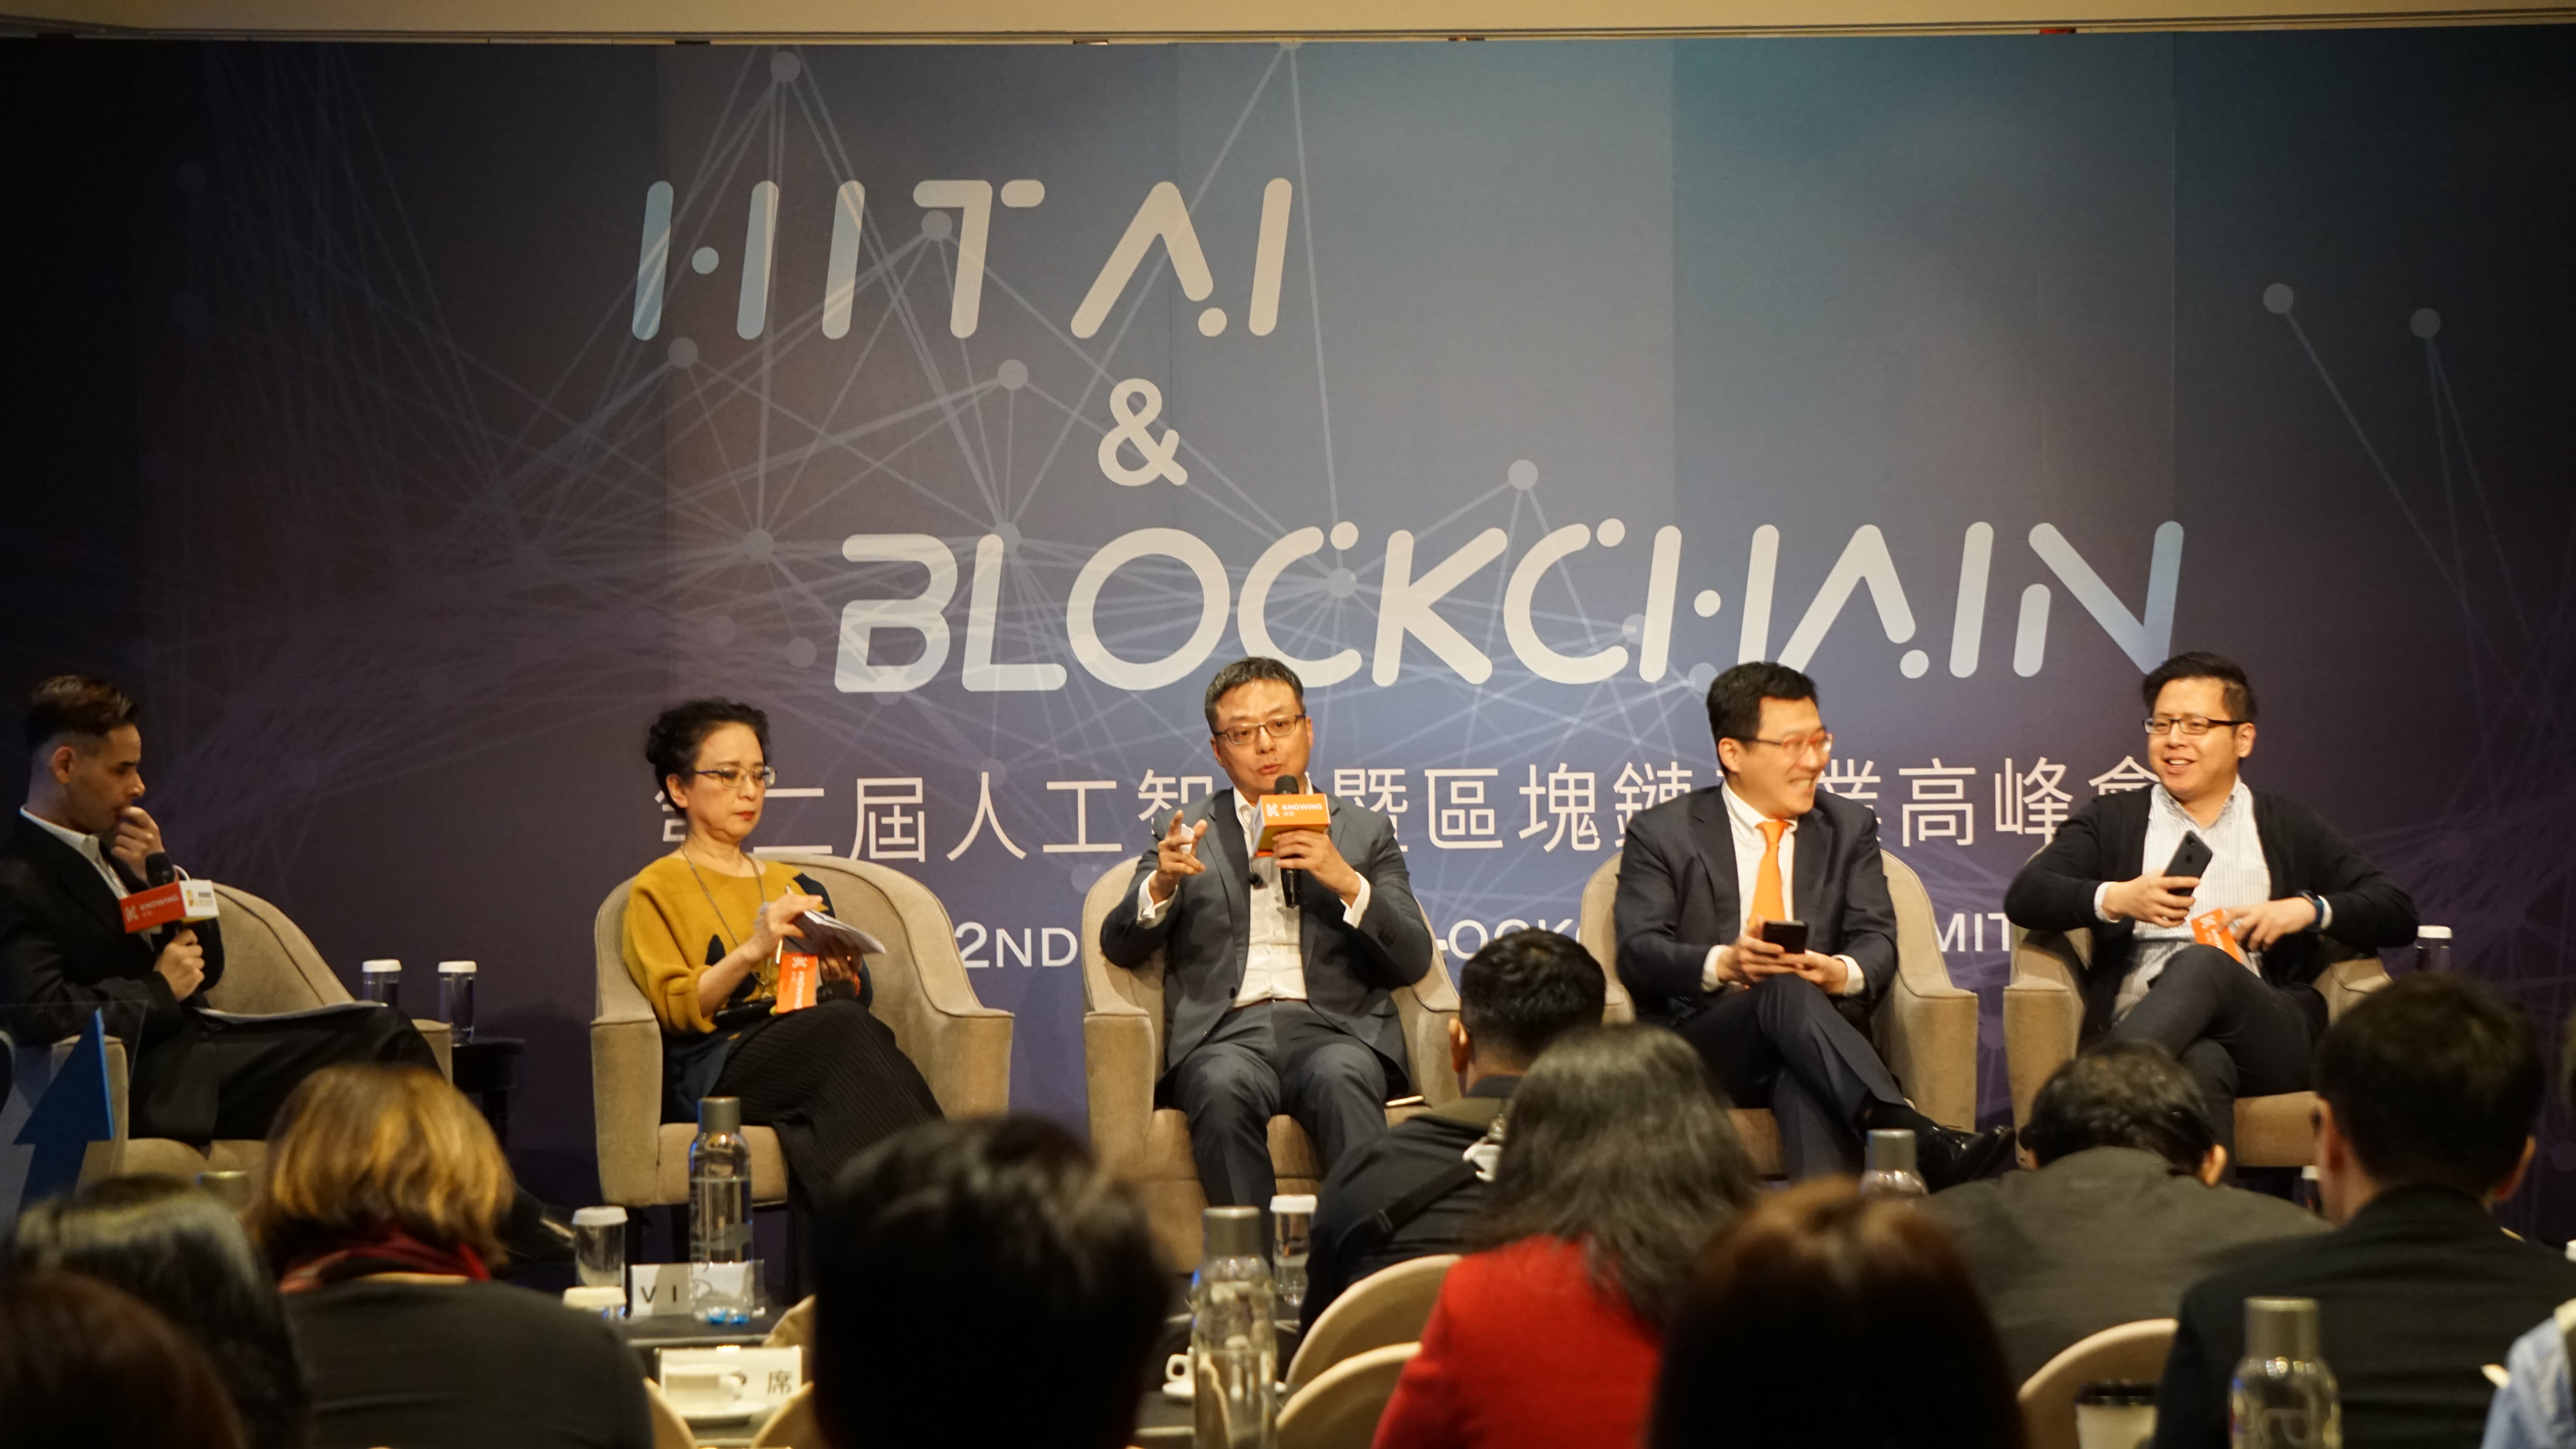 亞洲大學國際產學聯盟 舉辦AI & Blockchain論壇 產學研大咖暢談大未來